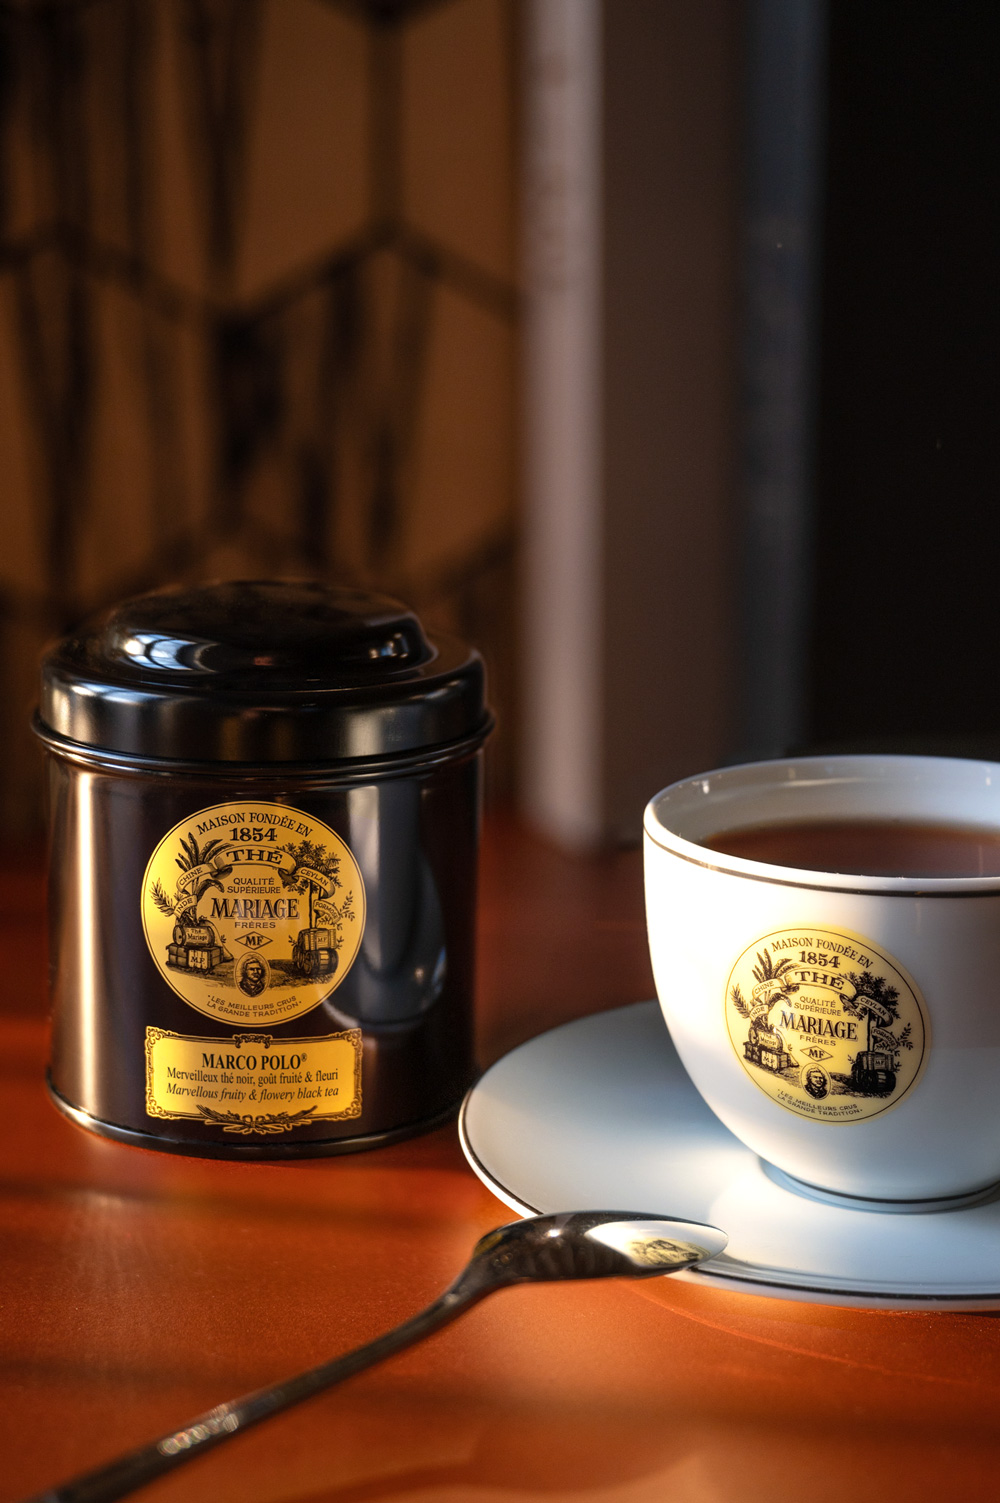 Boîte à thé en bois 16 x 24 cm TEA LIMITED SELECTION Tea Limited Selection